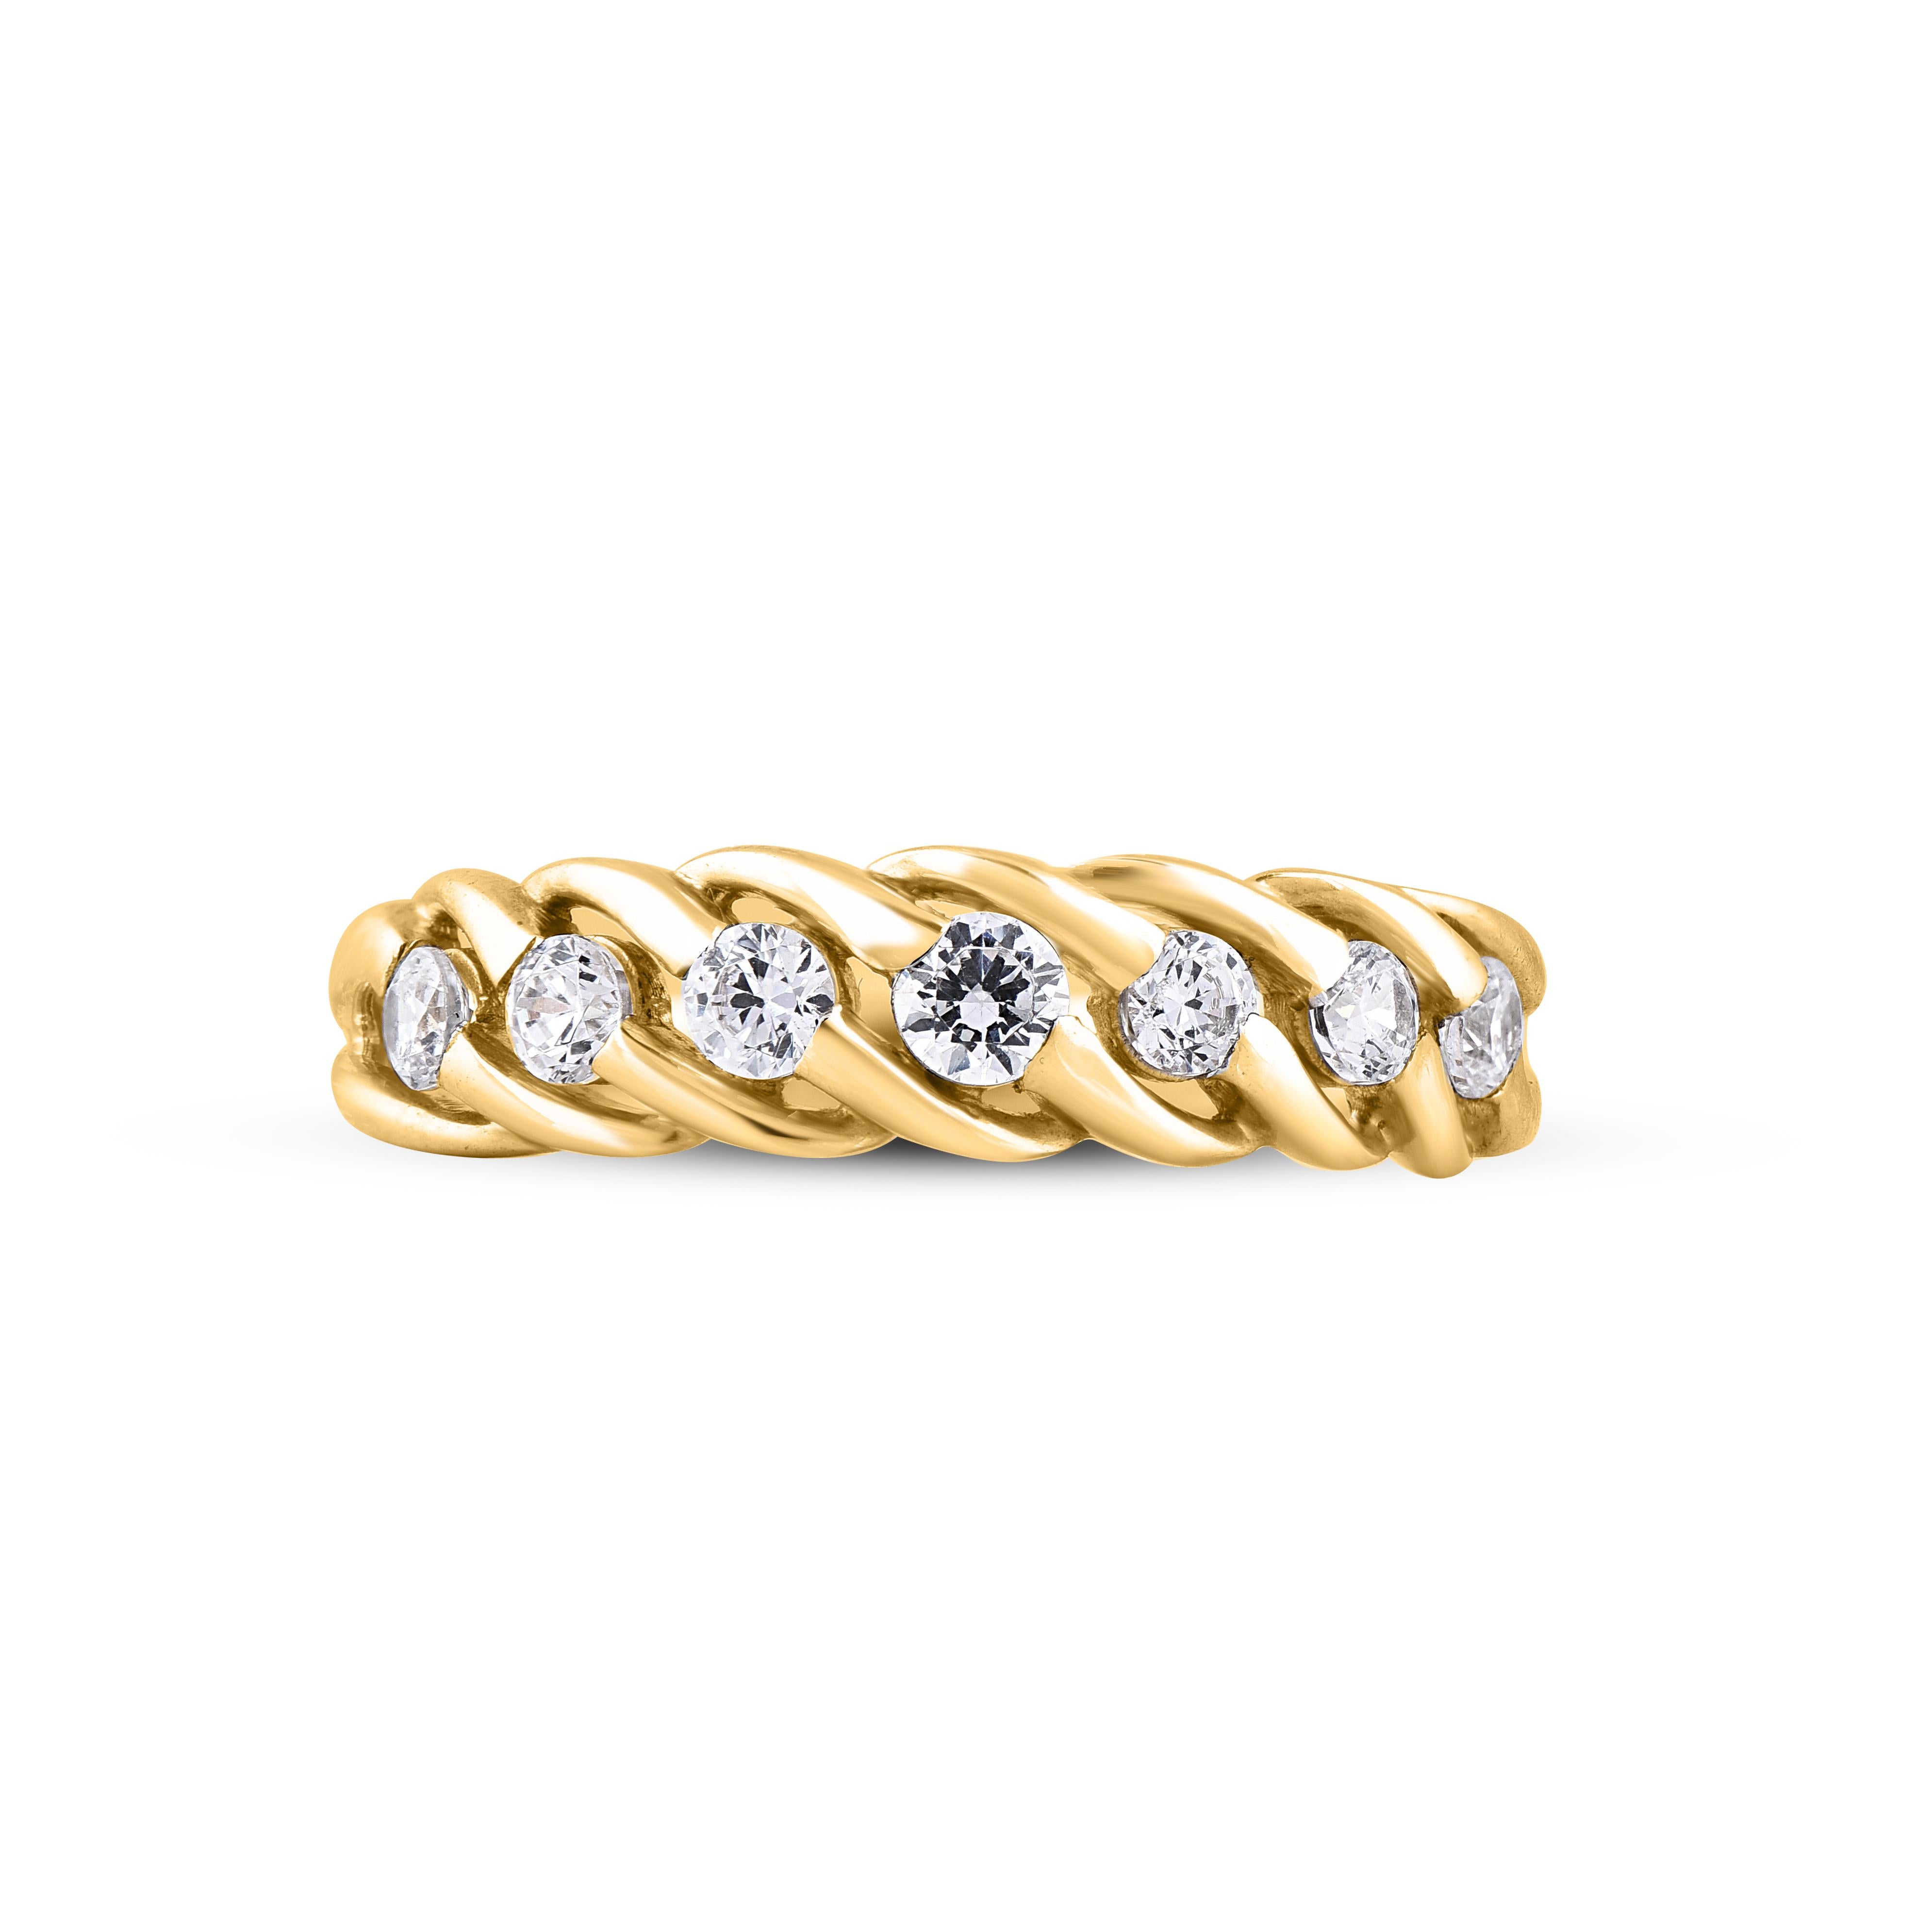 Verleihen Sie Ihrer Schmucksammlung einen Hauch von Glamour mit diesem diamantenen Verlobungsring. Dieser wunderschöne Ring ist mit schimmernden Diamanten im Brillantschliff in Kanalfassung besetzt. Gefertigt aus 14 Karat Gelbgold. Der Ring ist mit